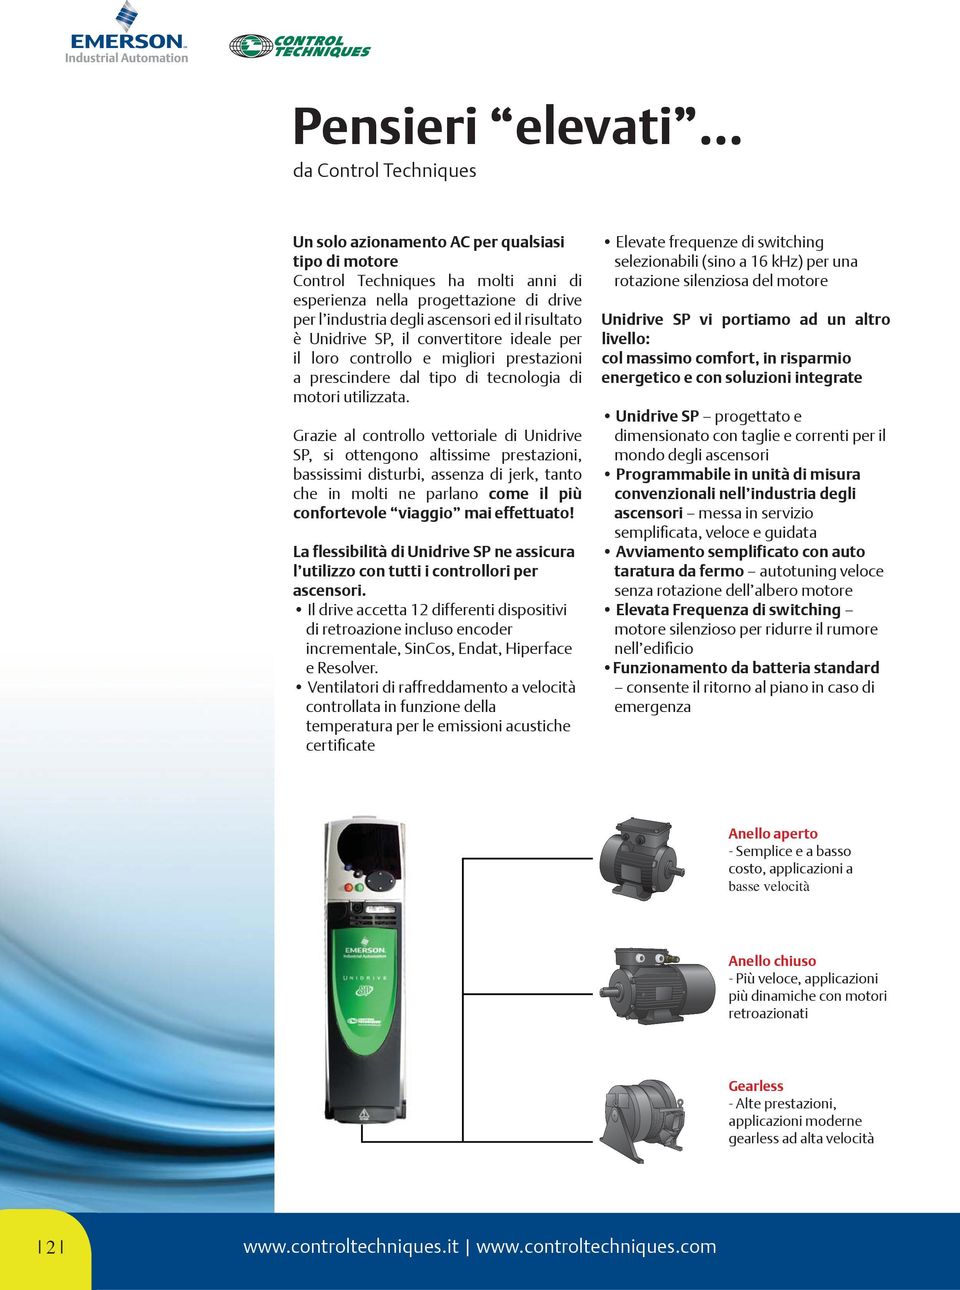 risultato è Unidrive SP, il convertitore ideale per il loro controllo e migliori prestazioni a prescindere dal tipo di tecnologia di motori utilizzata.